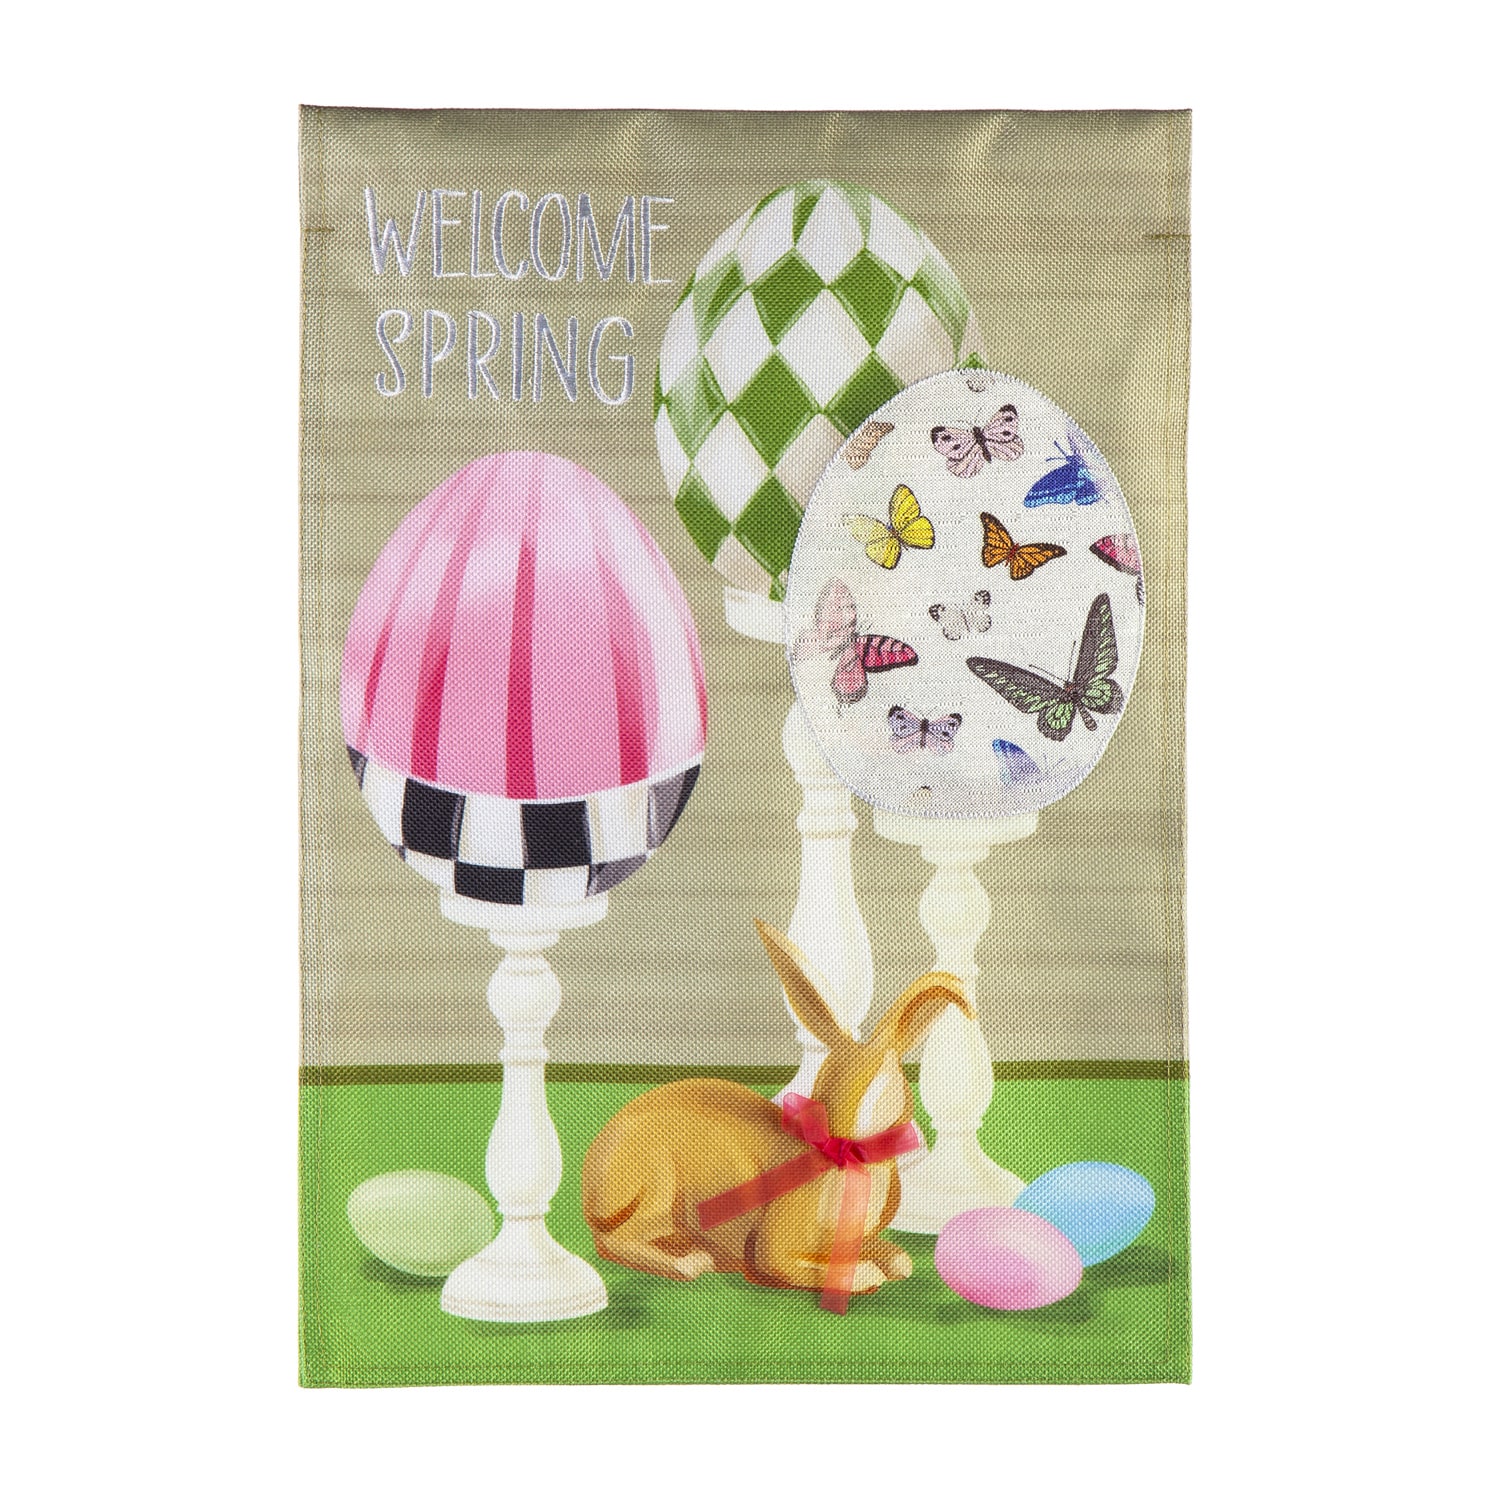 Elegant Easter Eggs “Welcome Spring” Garden Flag image